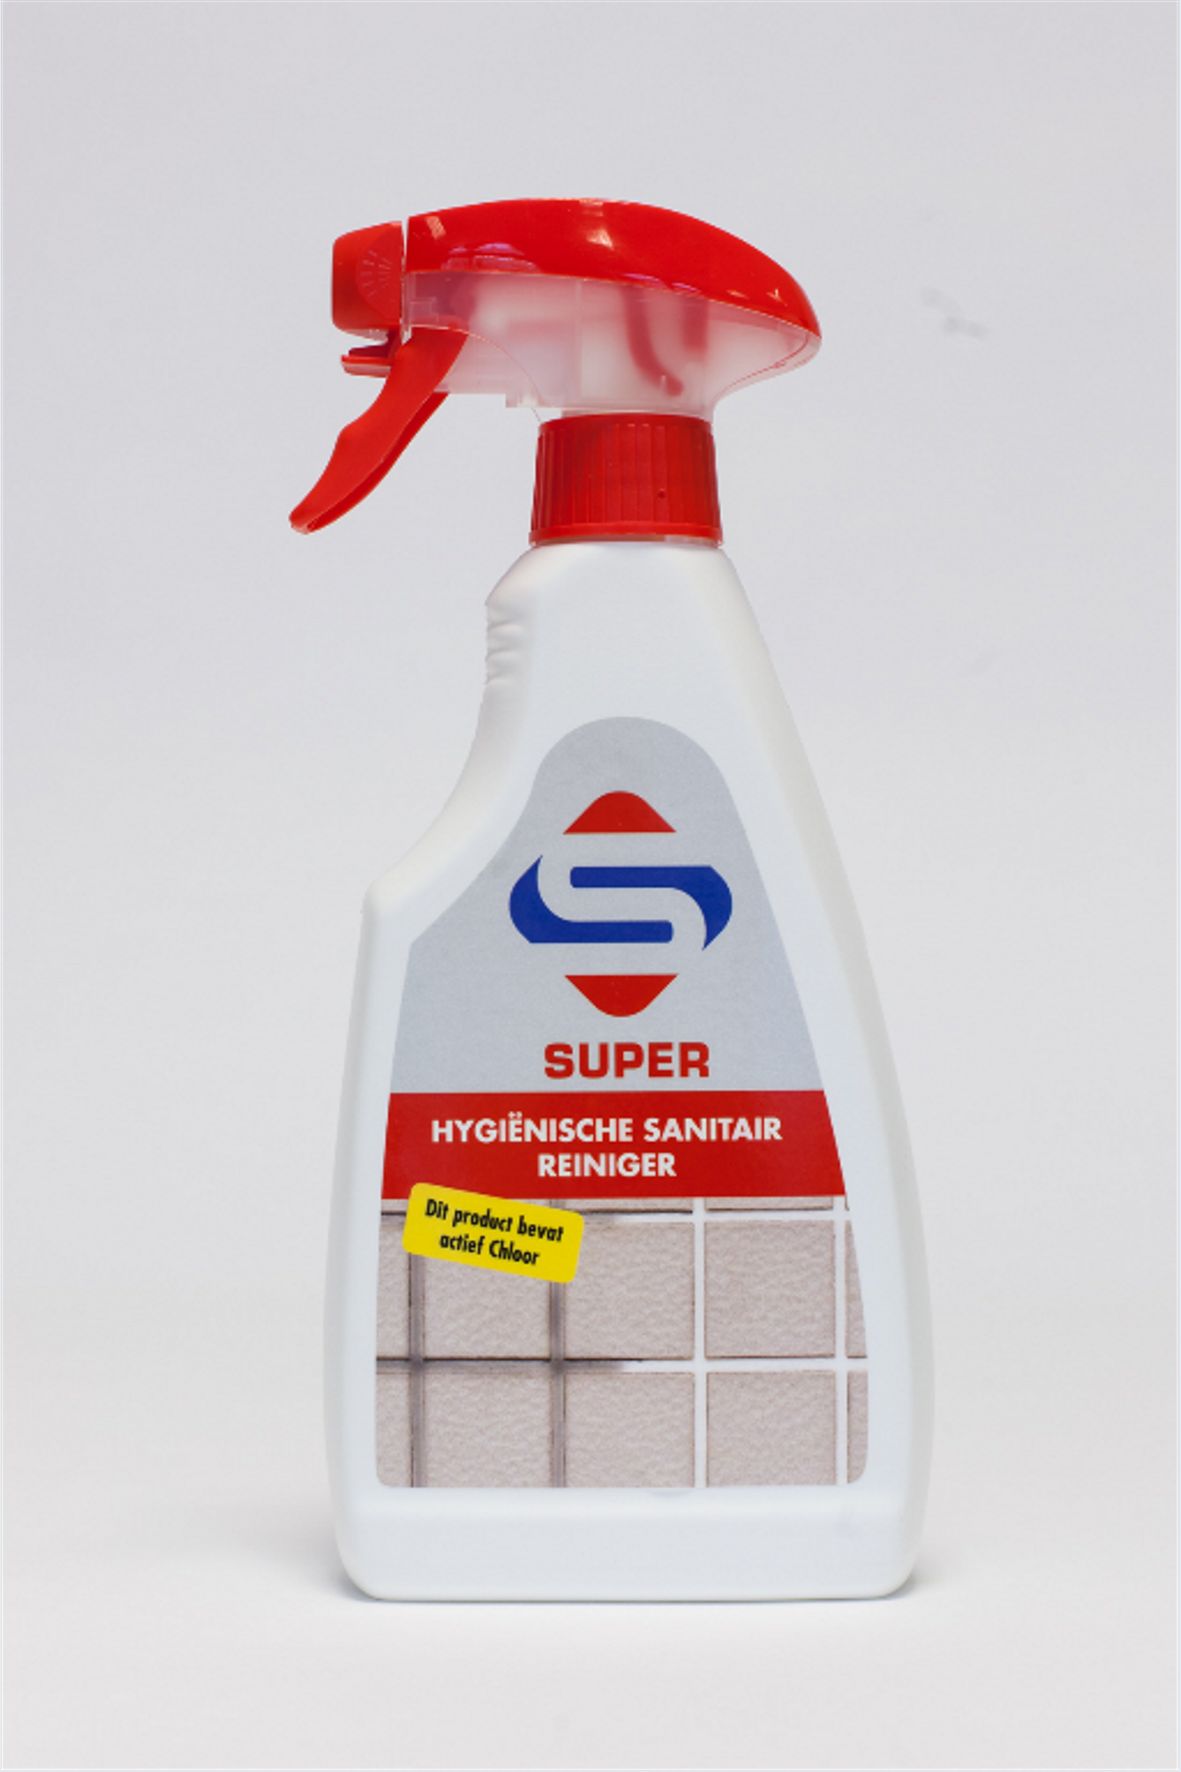 SUPER HYGIENISCHE SANITAIRREINIGER spray 500 ml